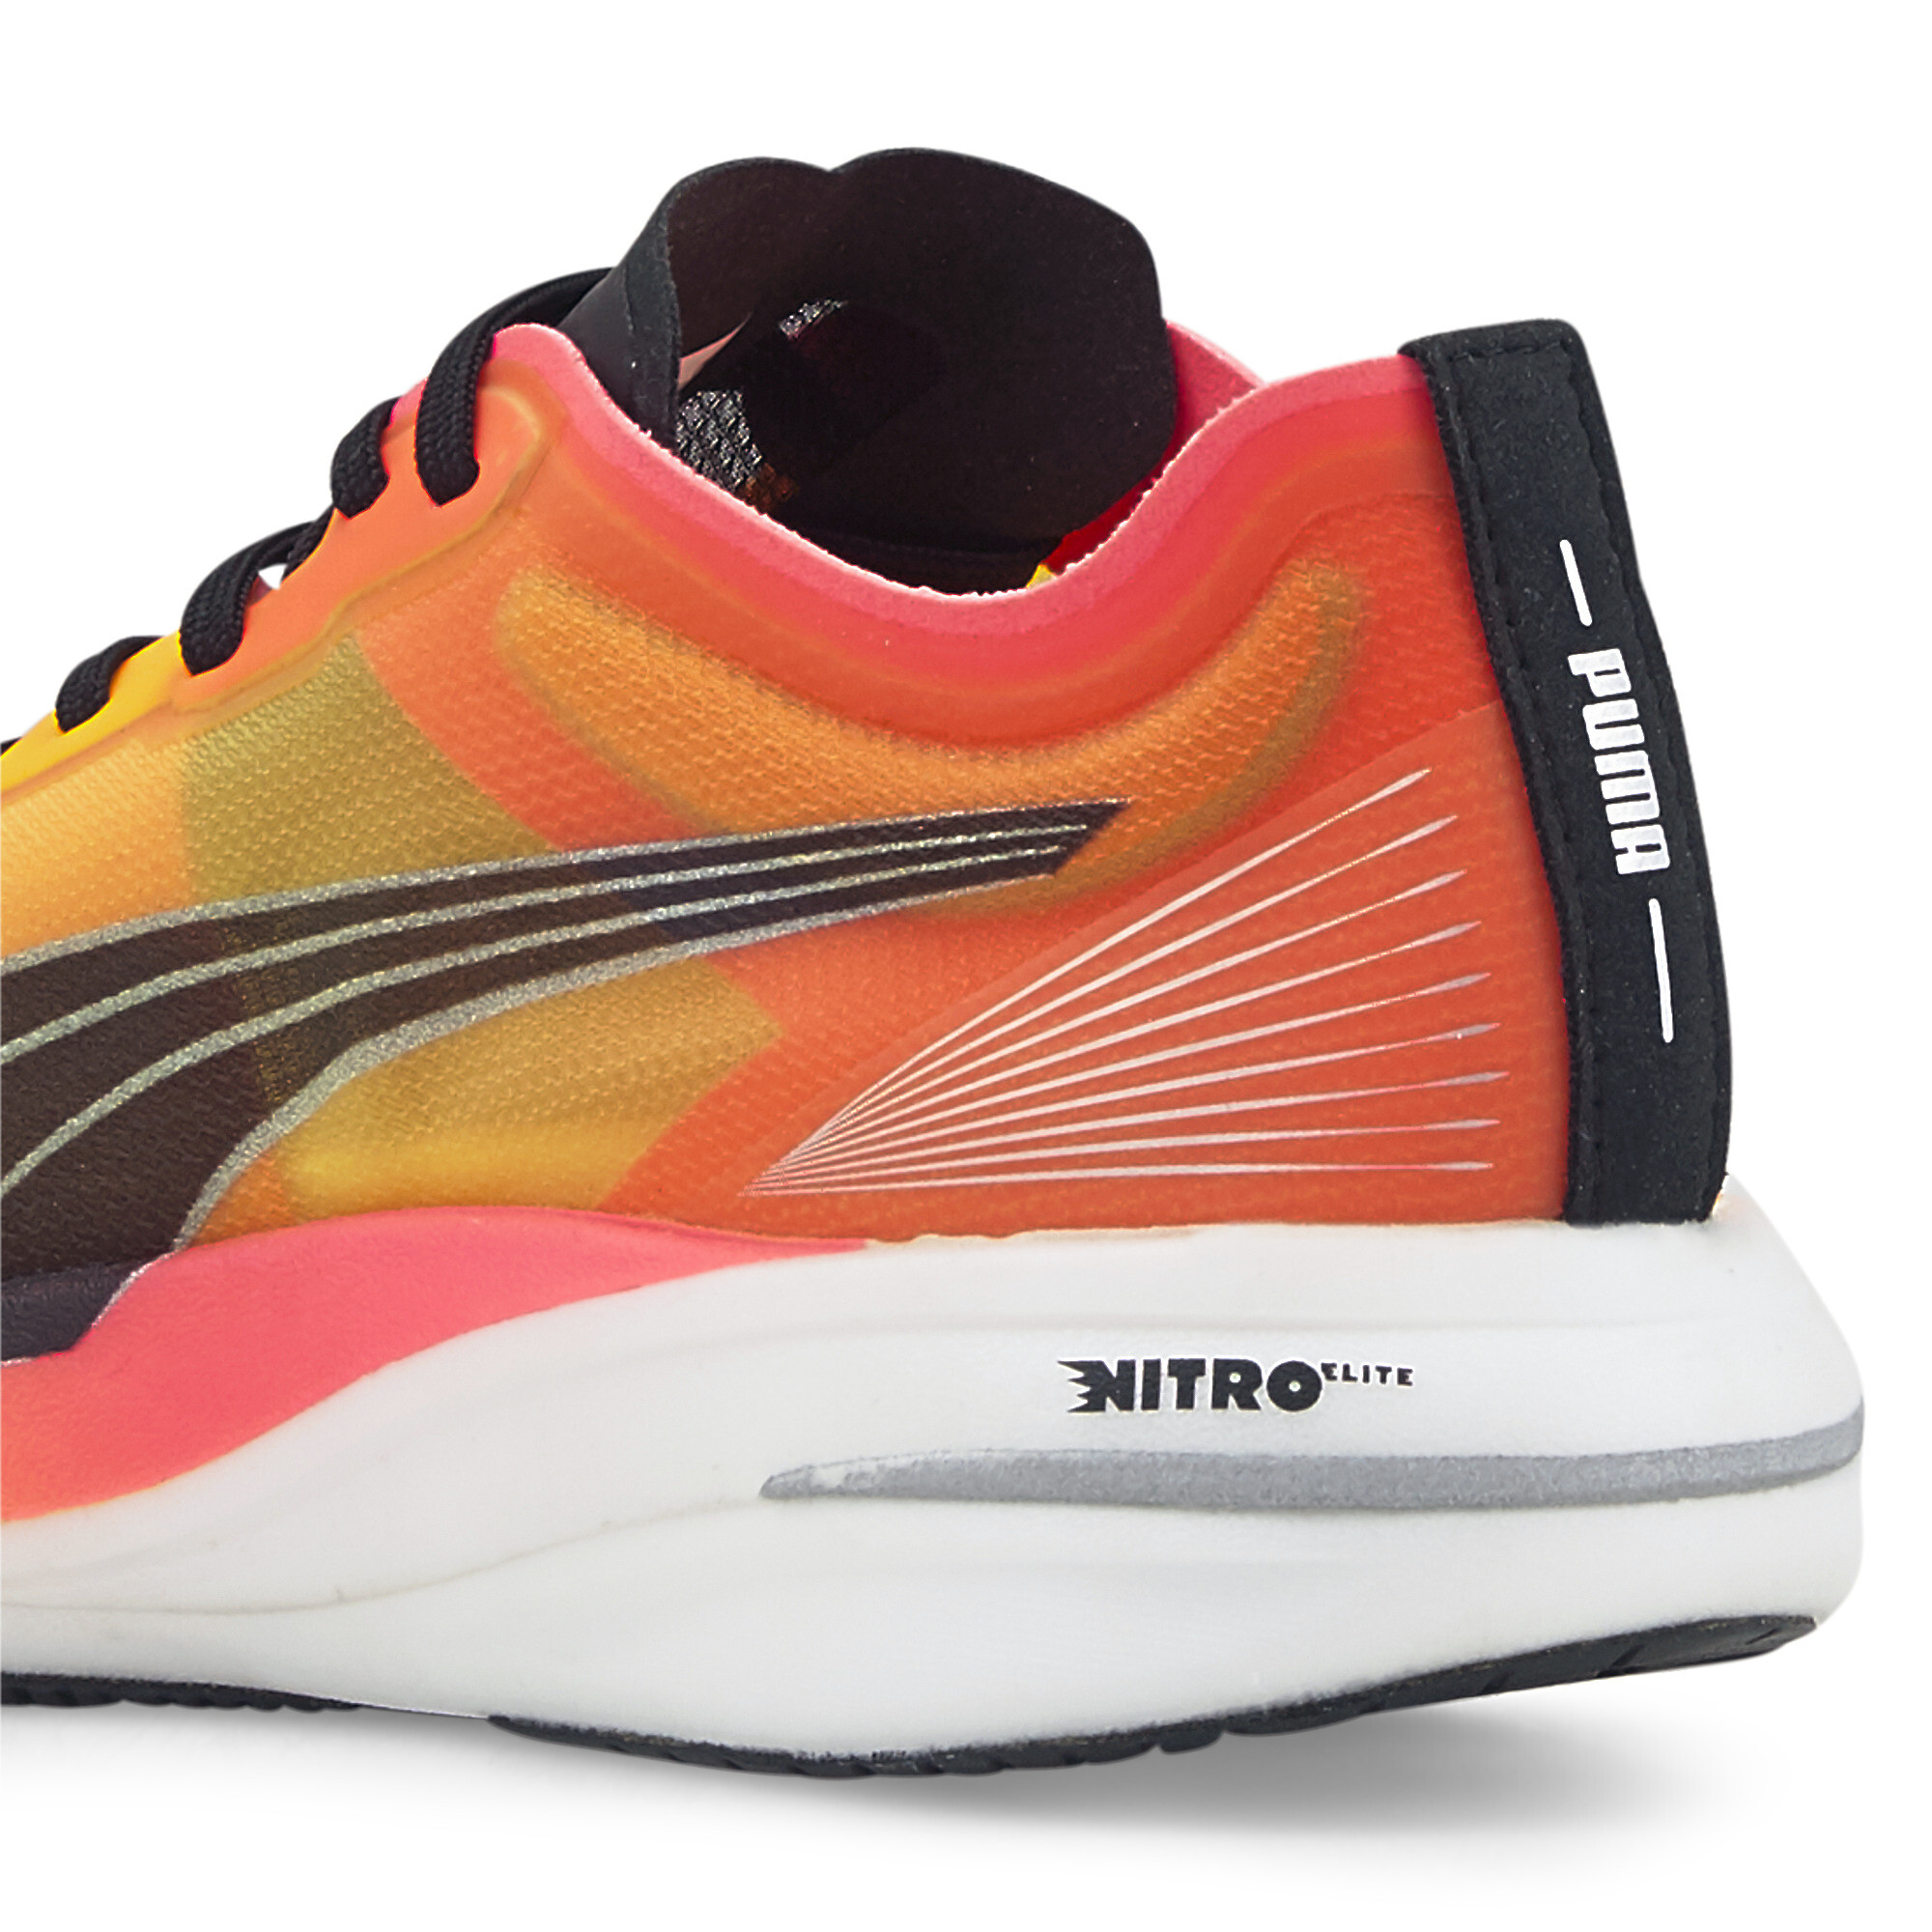 Women's PUMA Deviate NITRO Elite Fireglow Running Shoes Women In Orange, Size EU 41